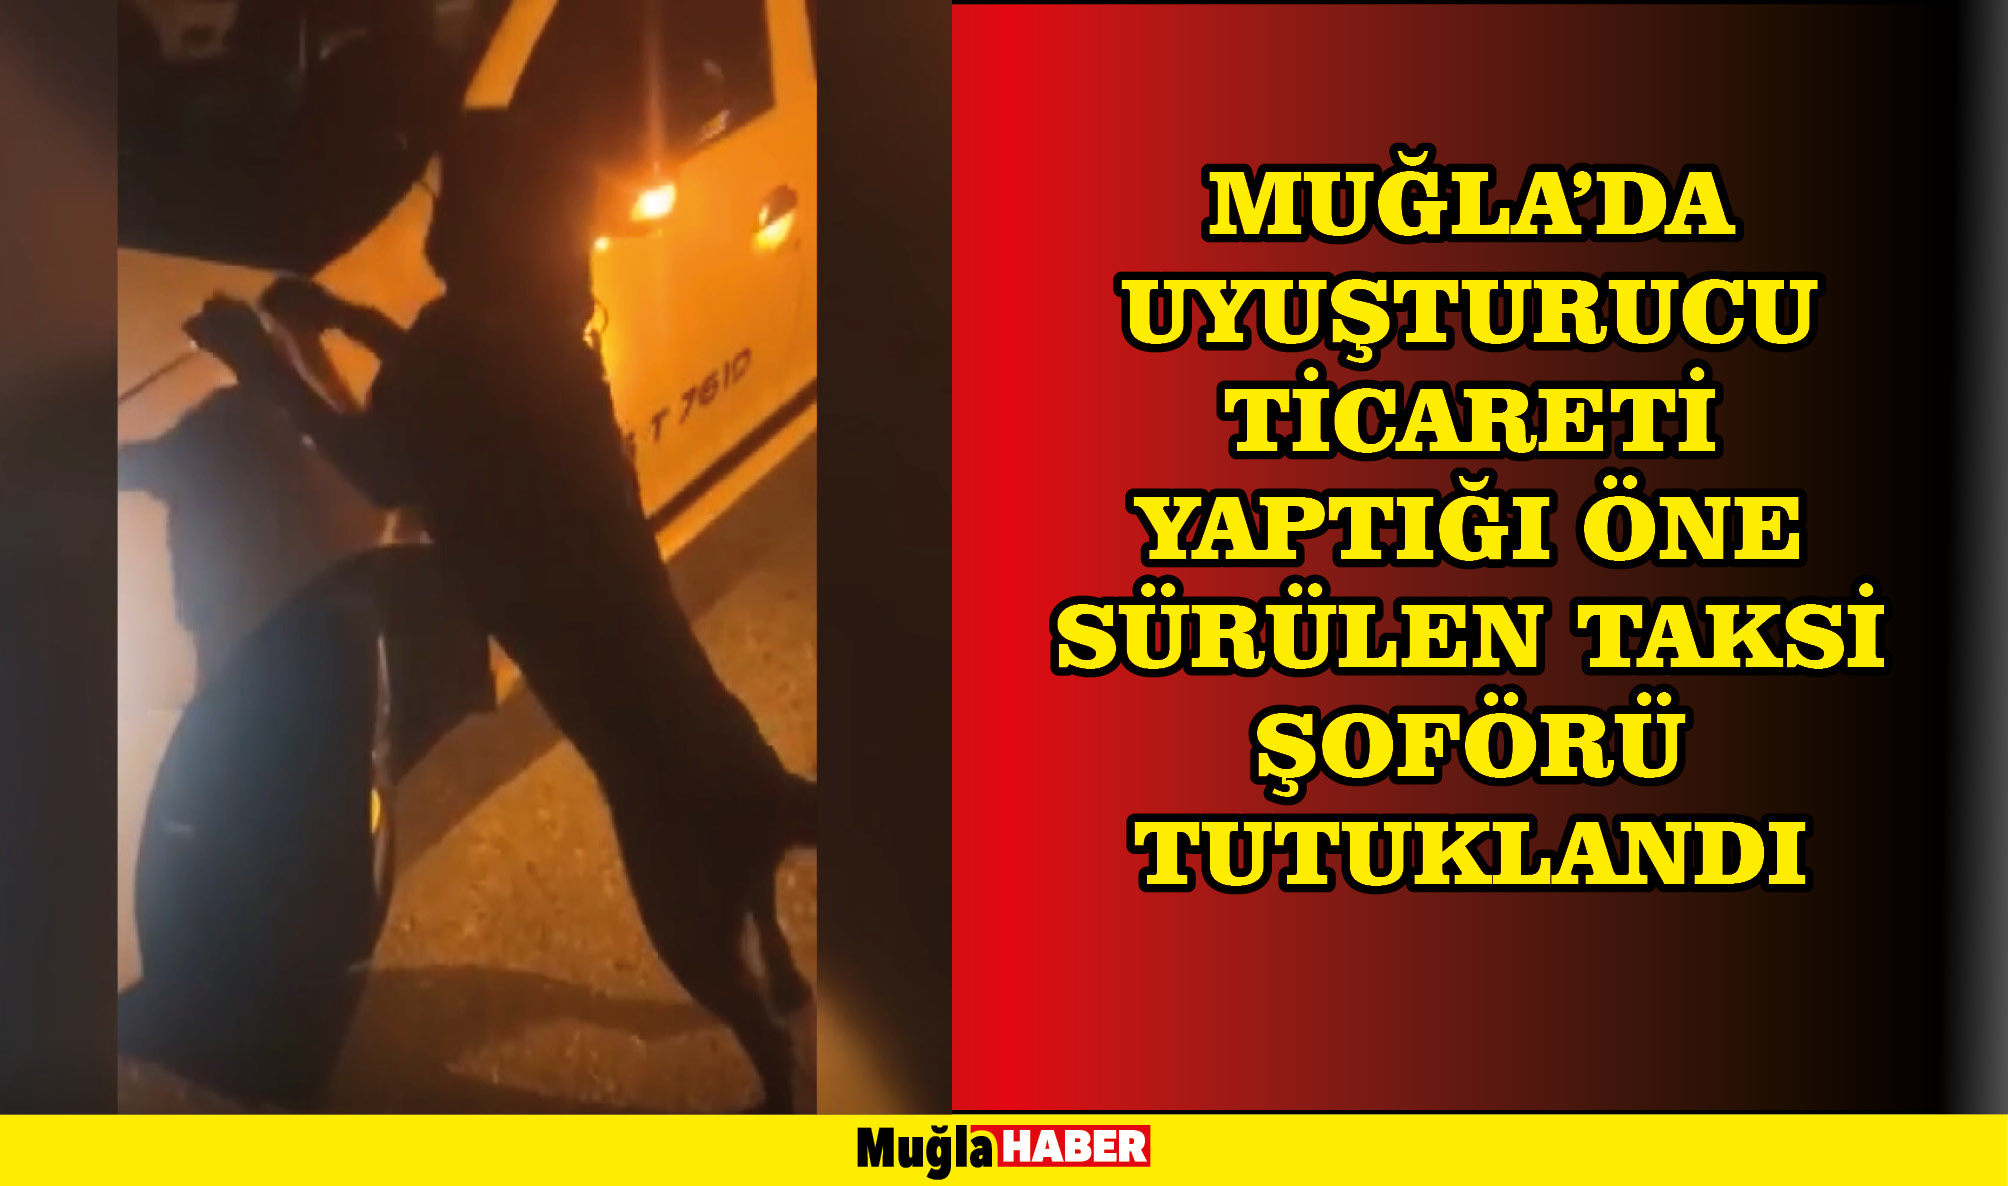 Muğla'da uyuşturucu ticareti yaptığı öne sürülen taksi şoförü tutuklandı